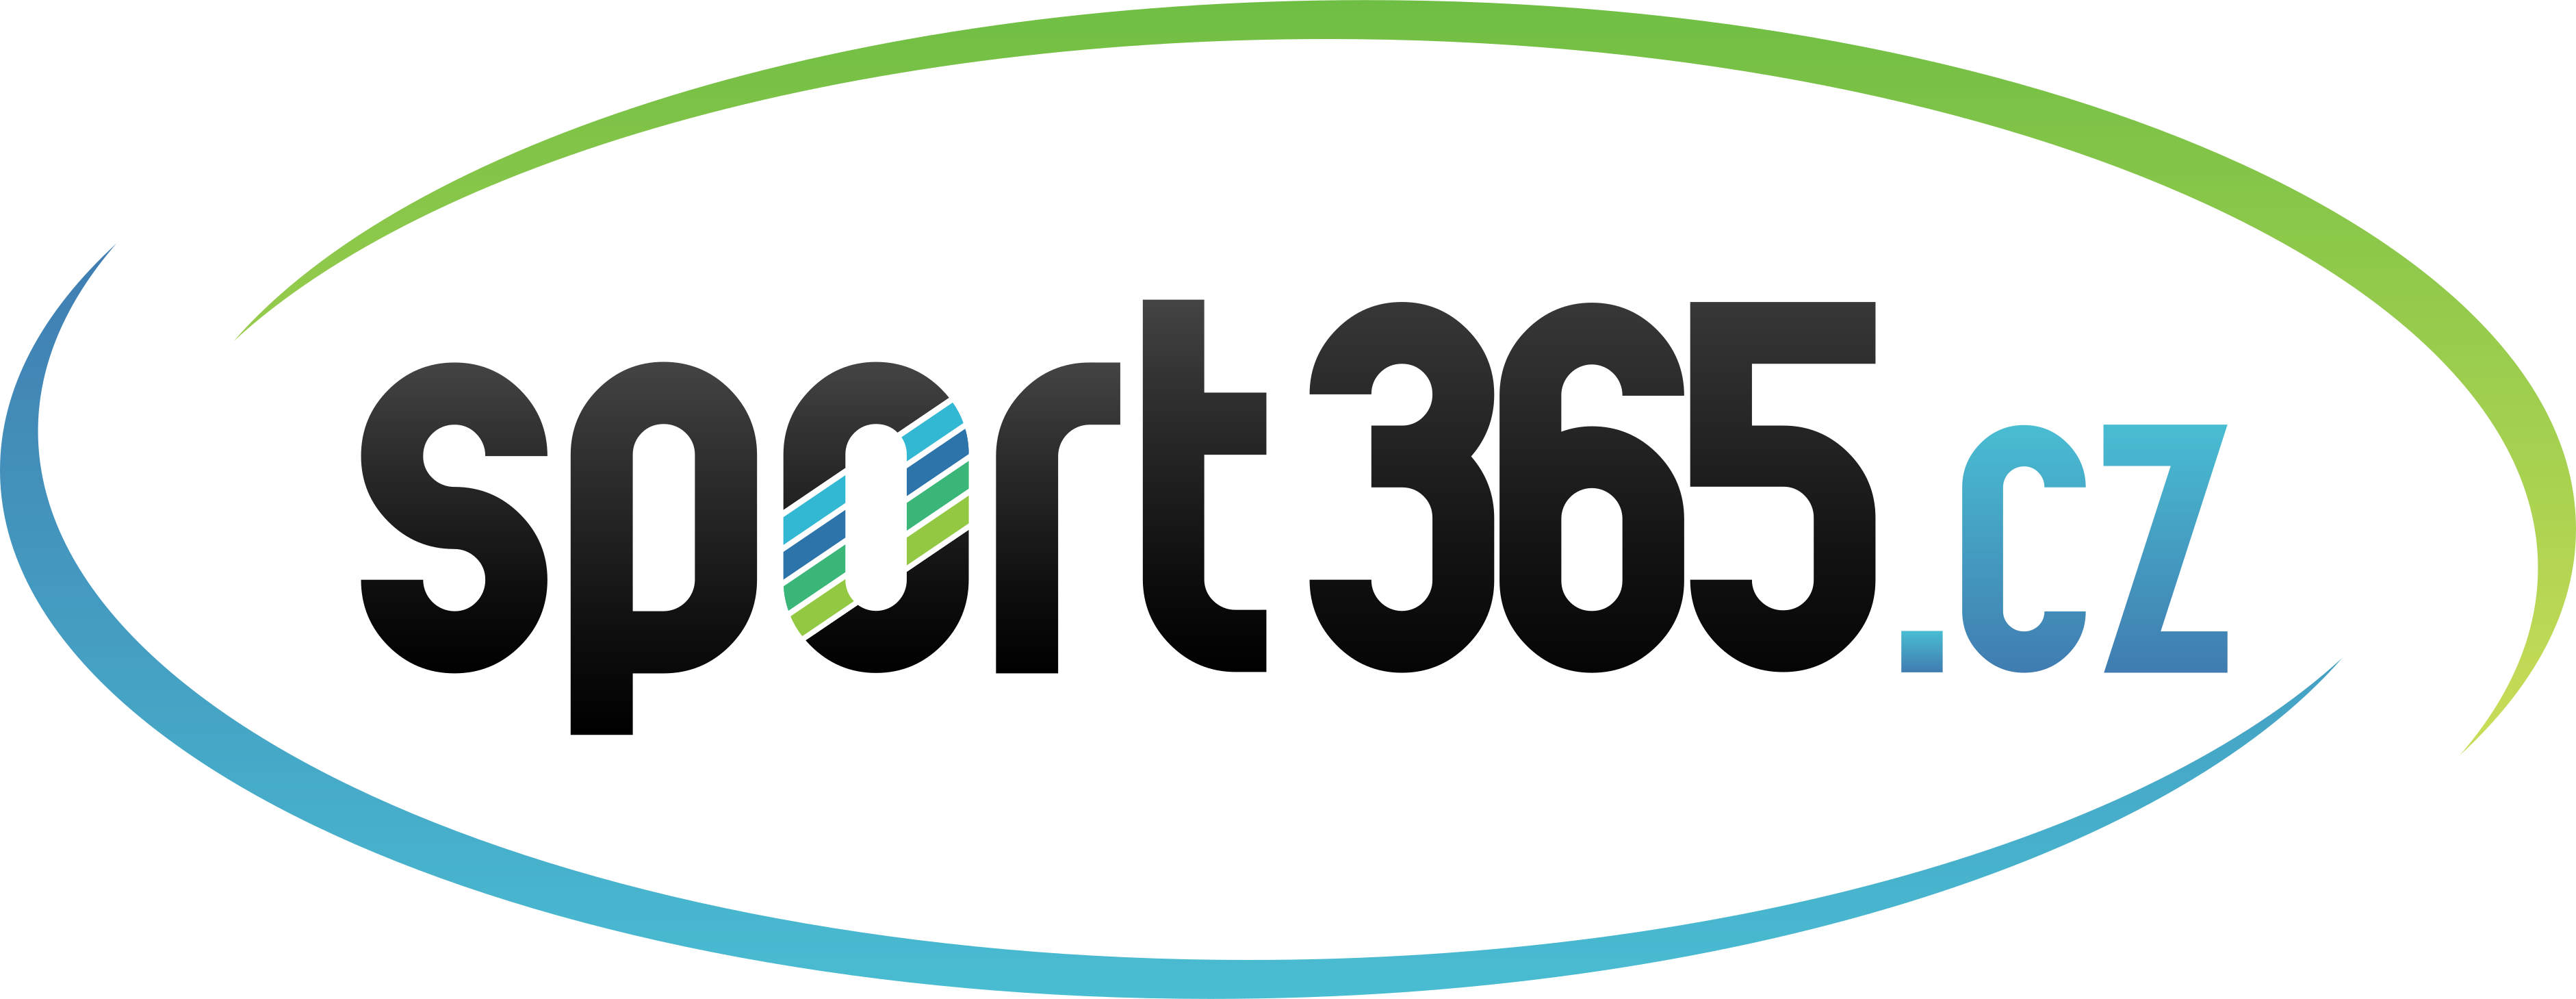 Sport365.cz - logo